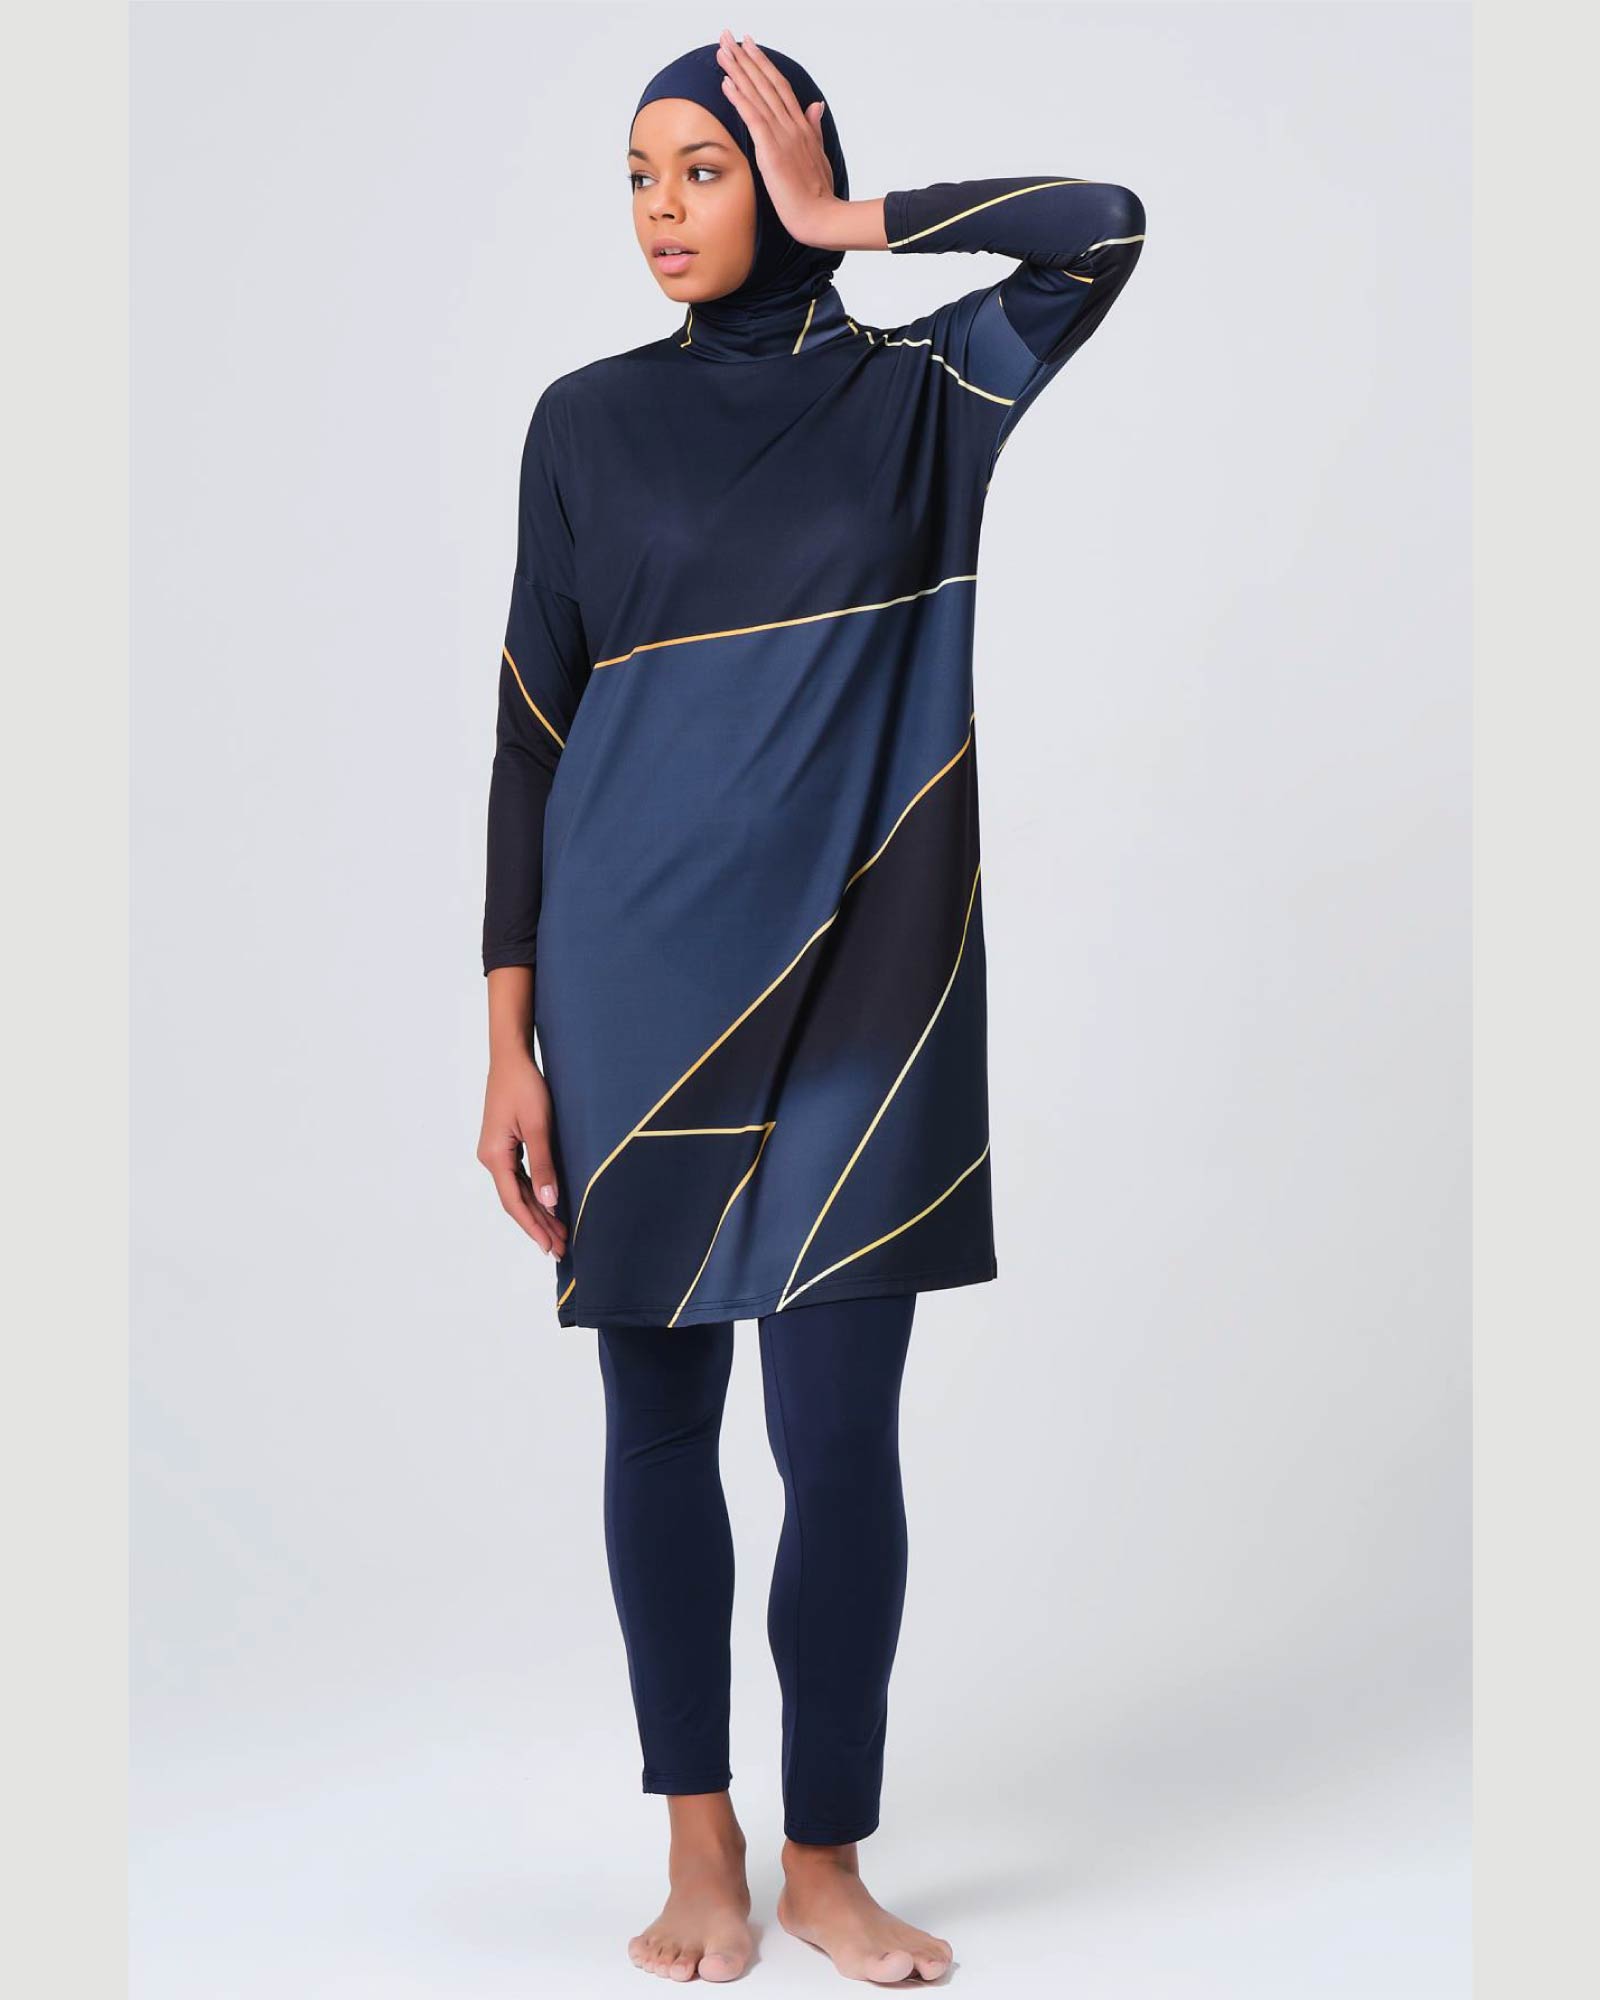 Damen-Hijab- Burkini/Badeanzug mit Gold Details  5er Set